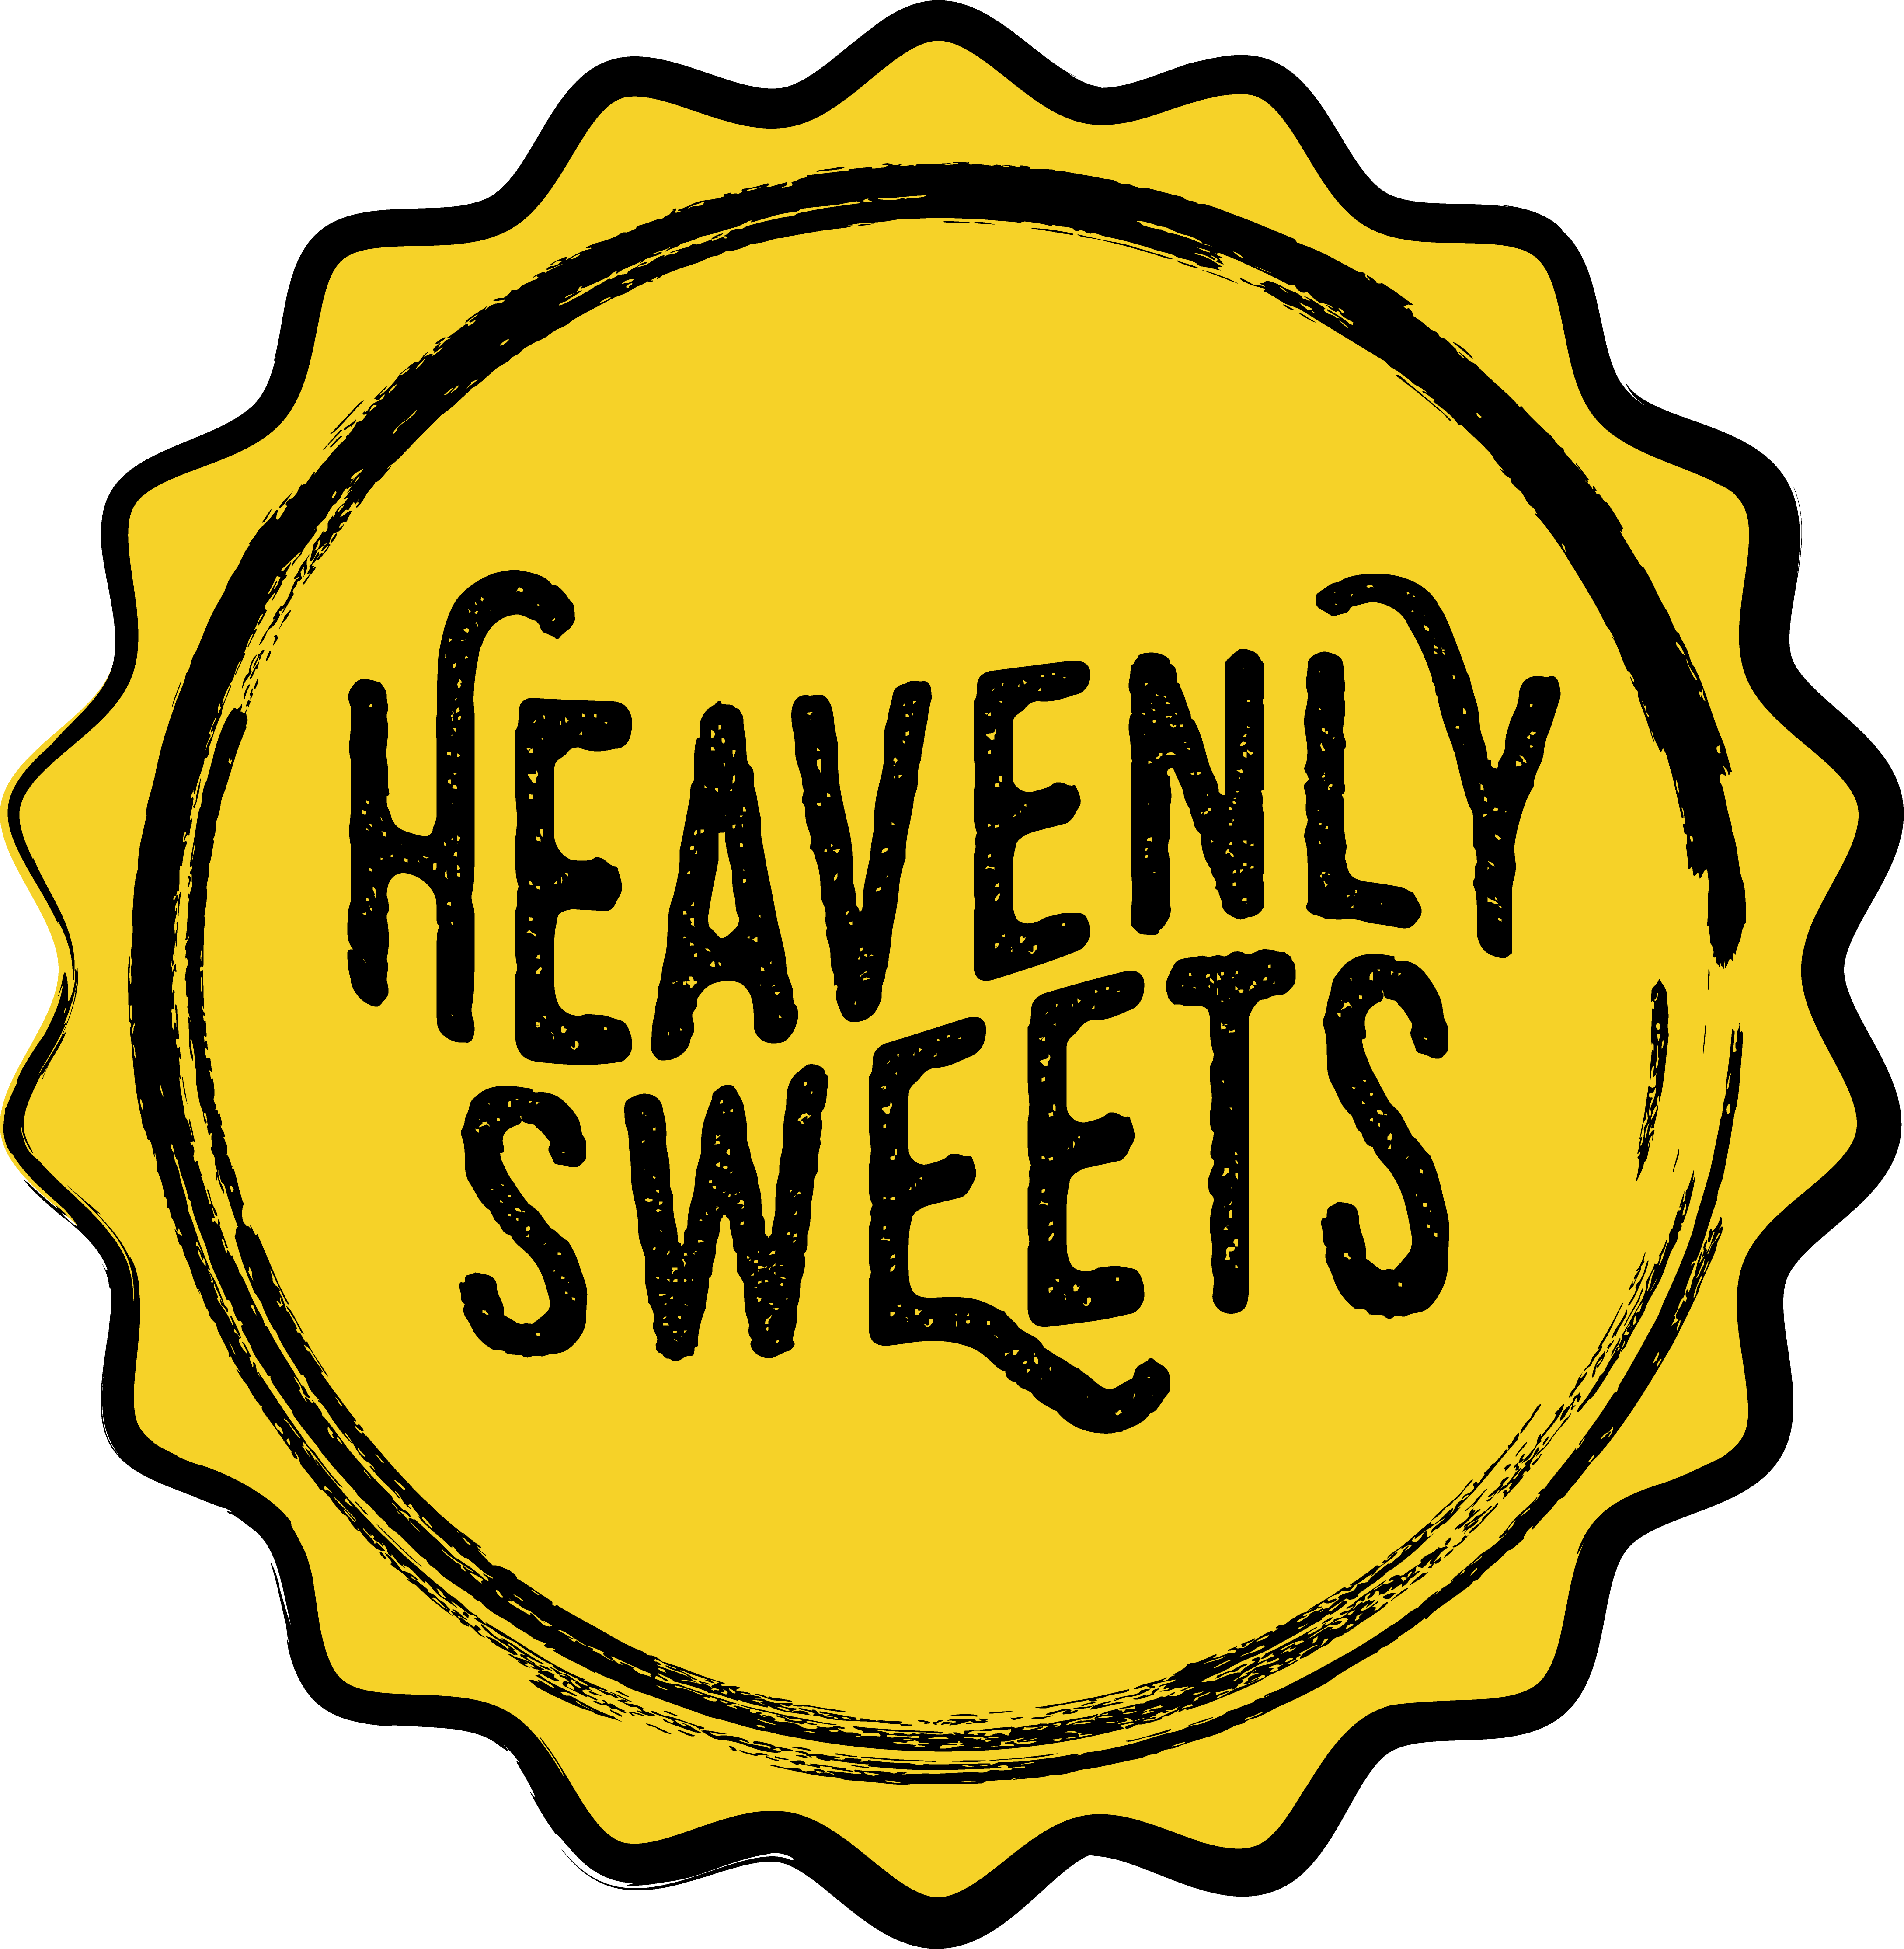 Testez gratuitement le Coffret Heavenly Sweets